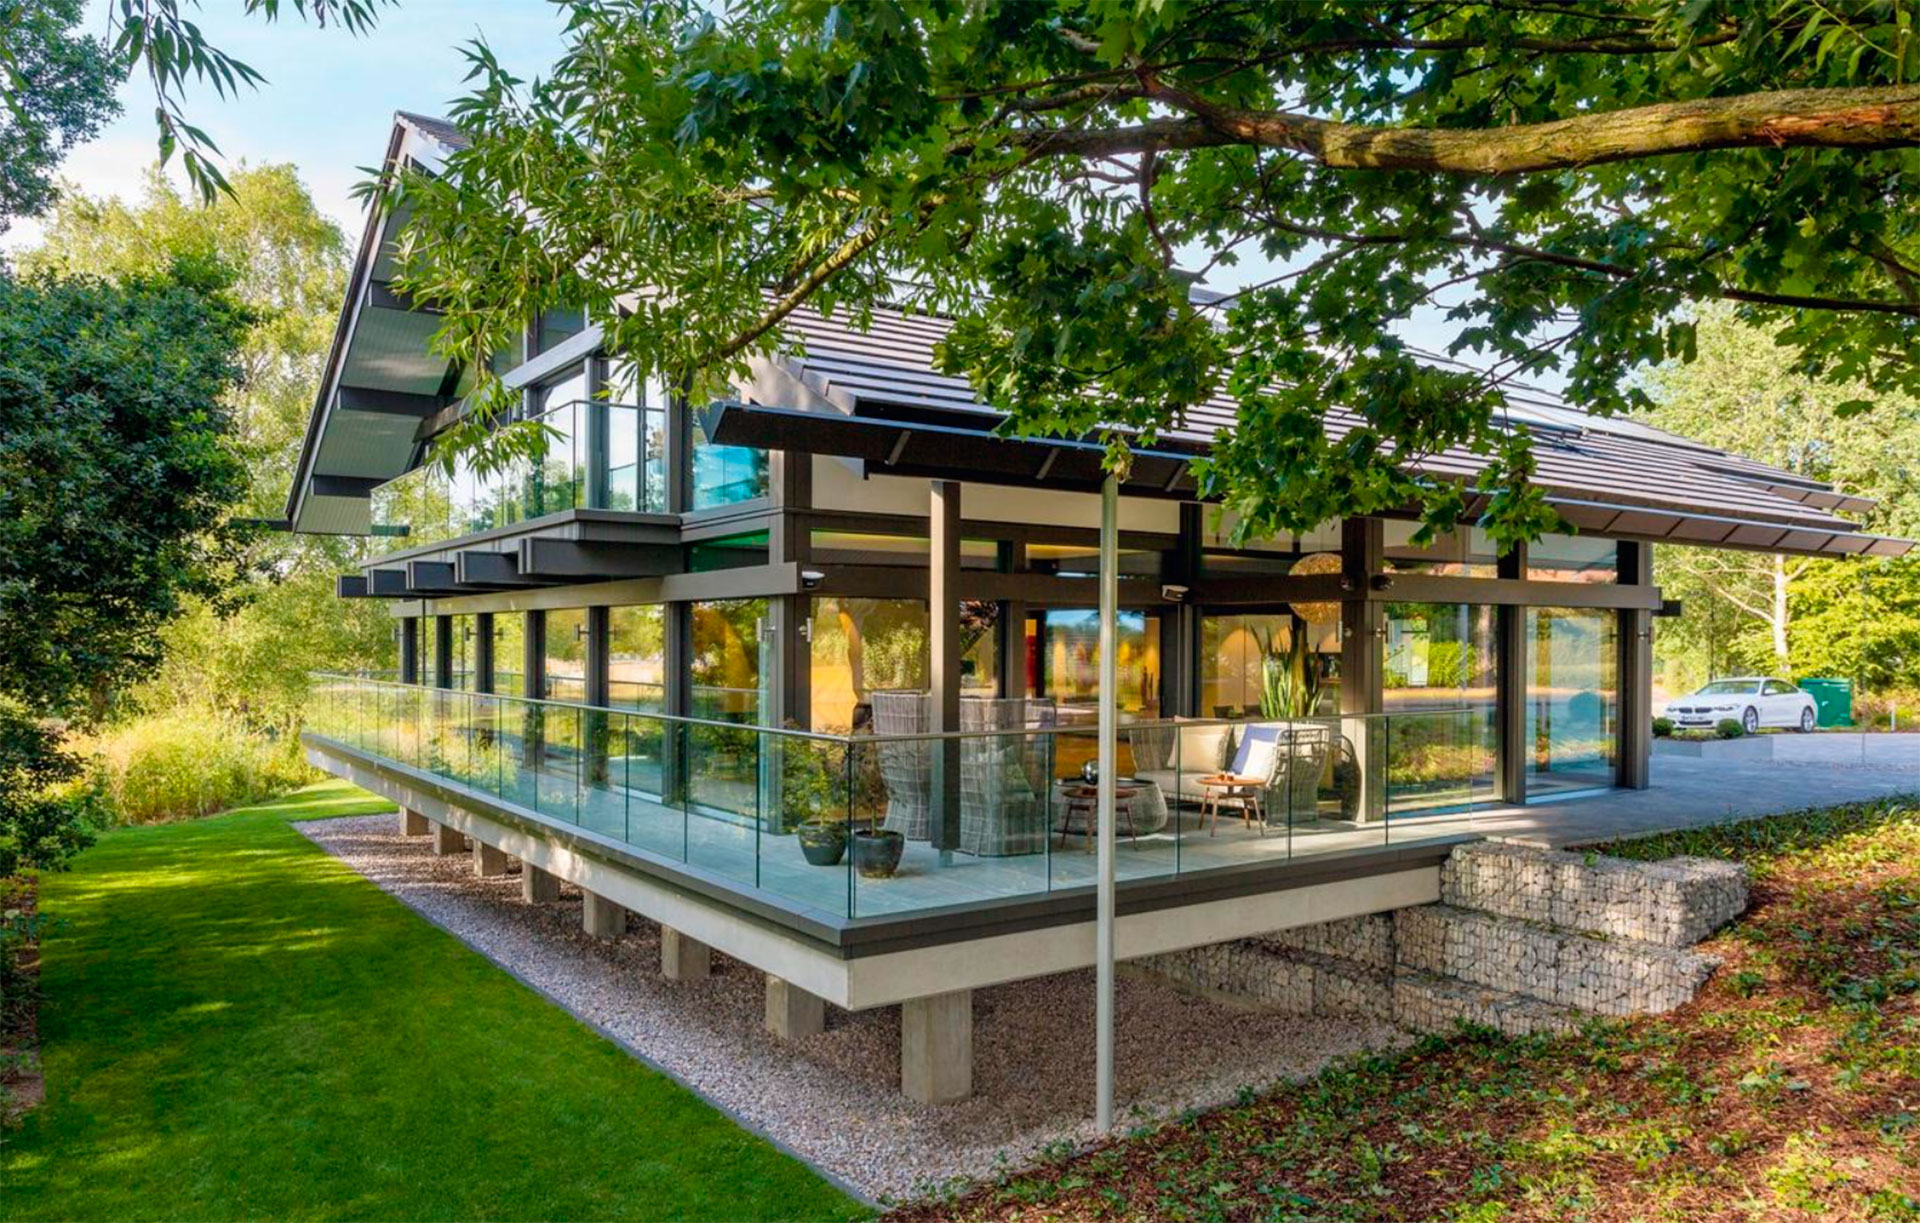 Antonio Banderas' base home model in Surrey